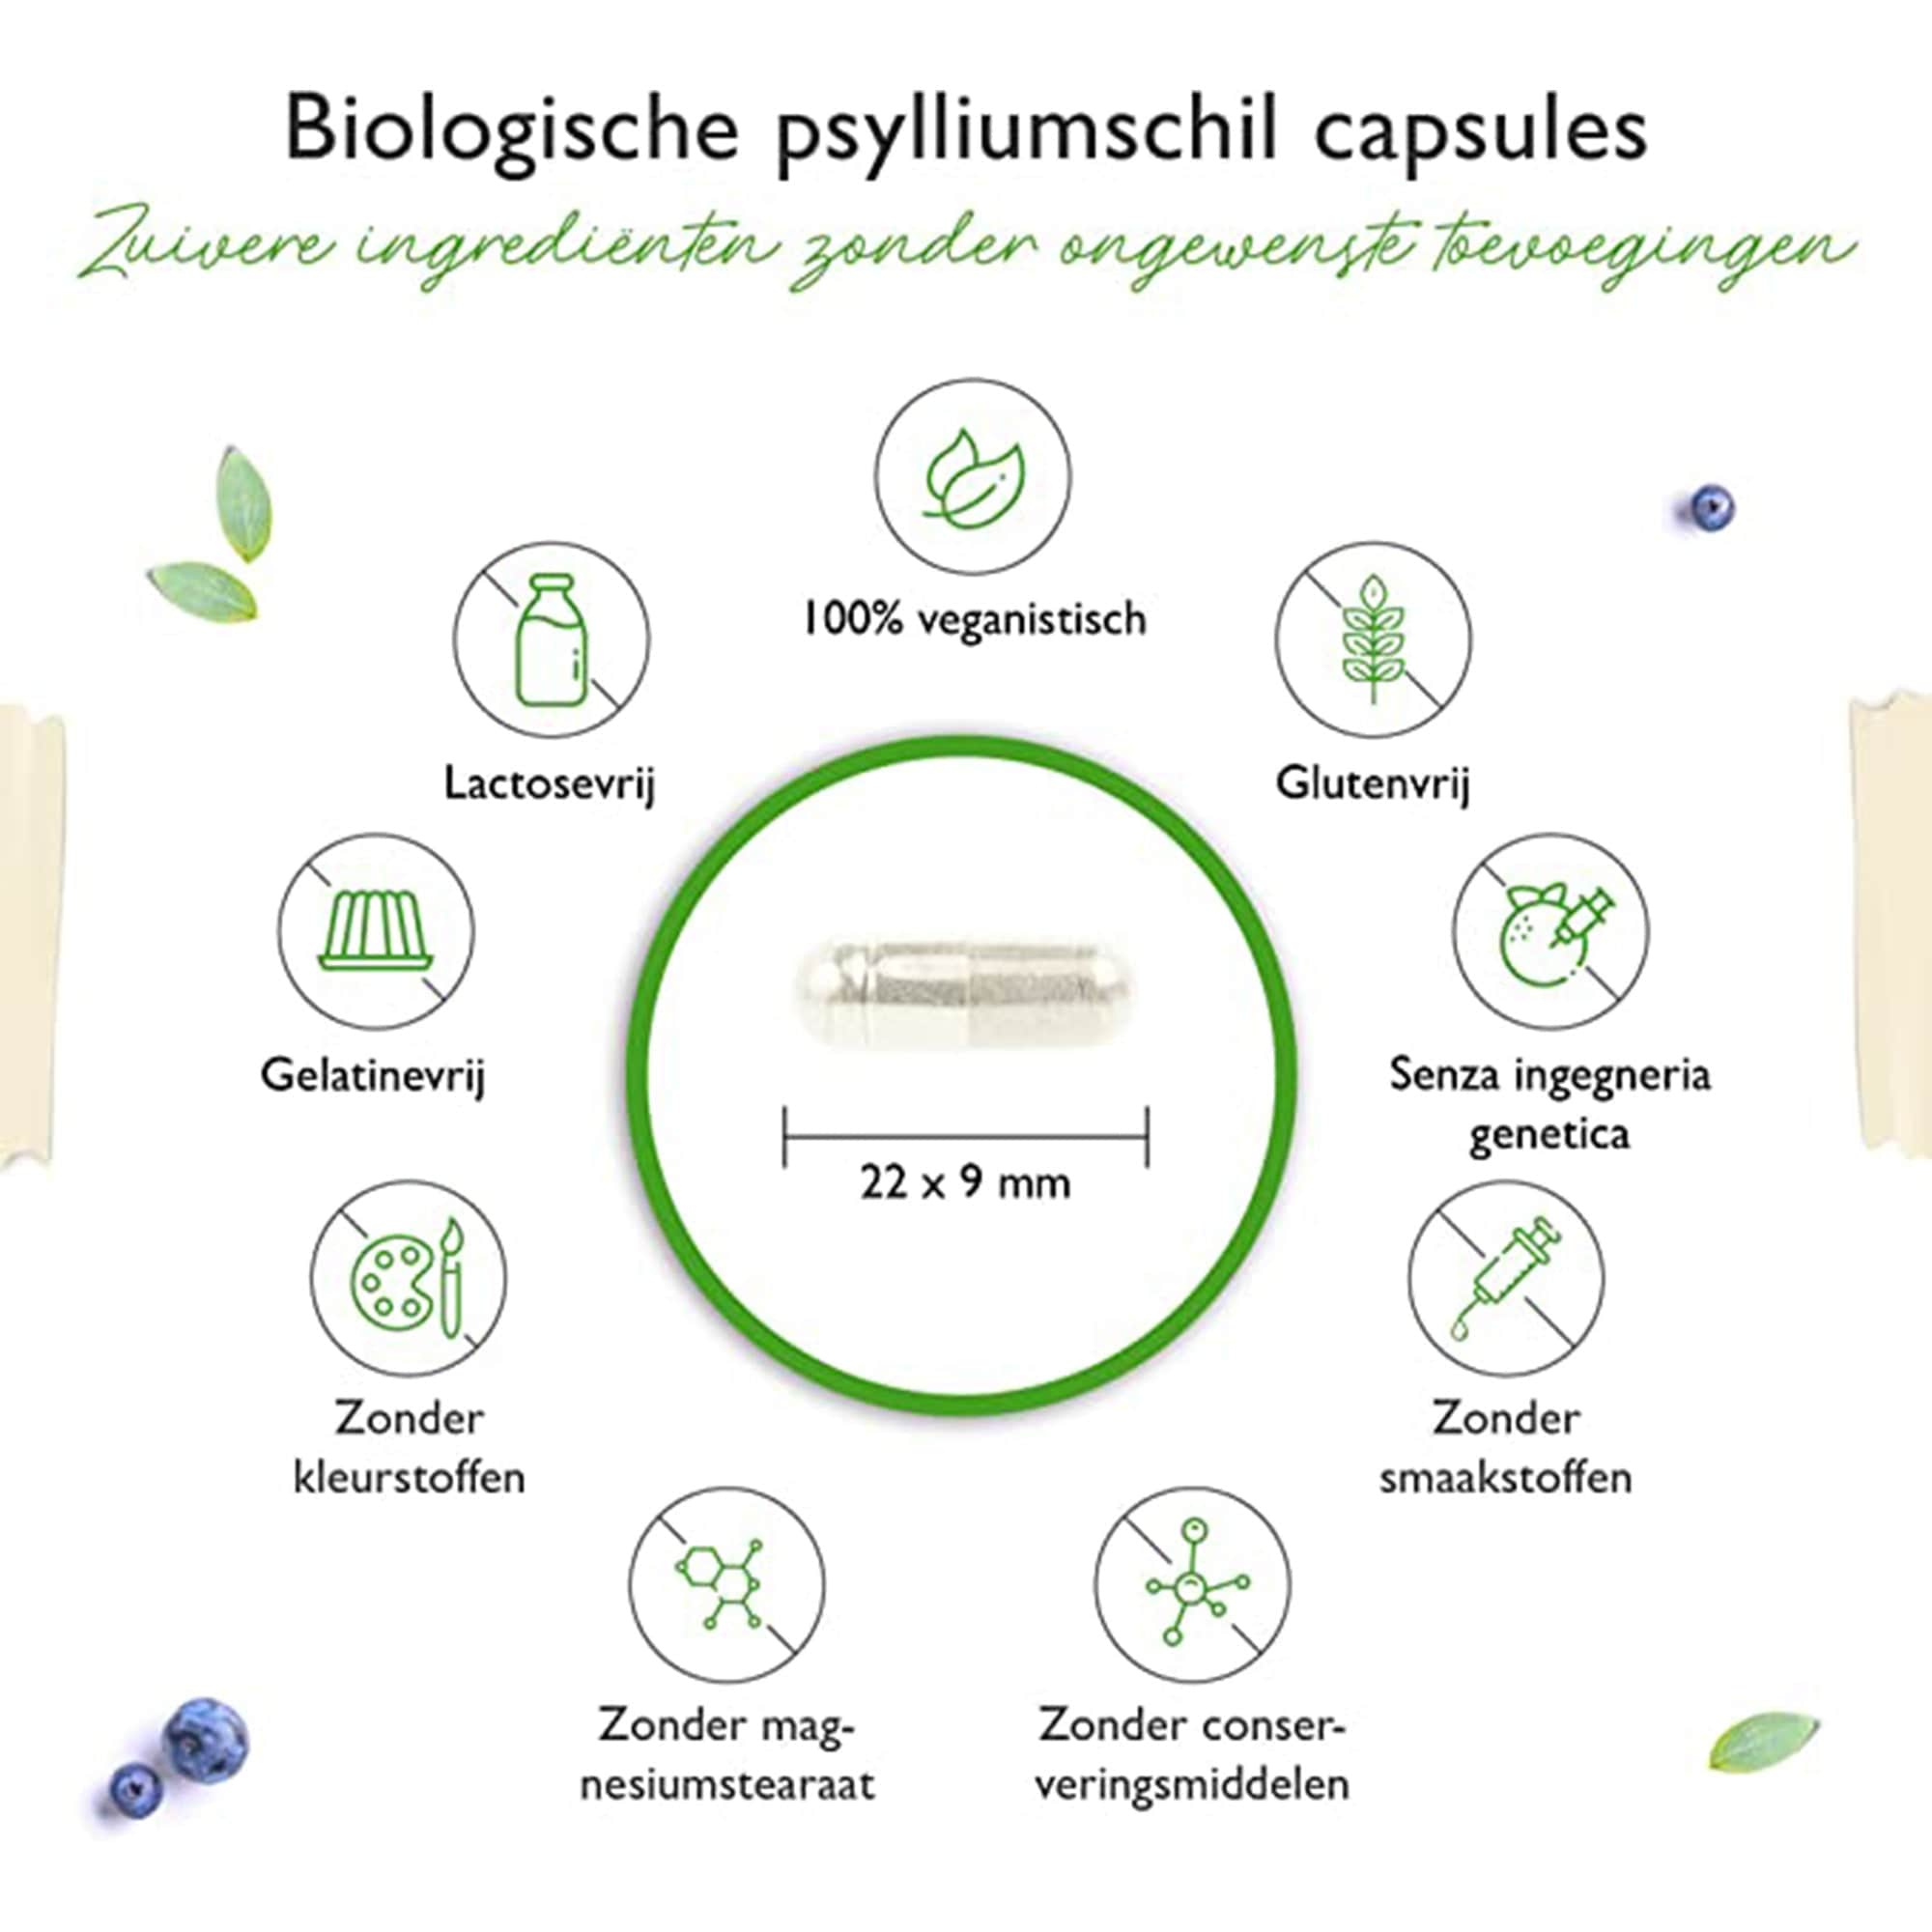 Vit4ever psylliumschillen | 365 veganistische capsules | 3000 mg per dagdosis | Premium: 100% organisch psyllium uit India, 99+% zuiver, fijngemalen | Duurzaam geteeld